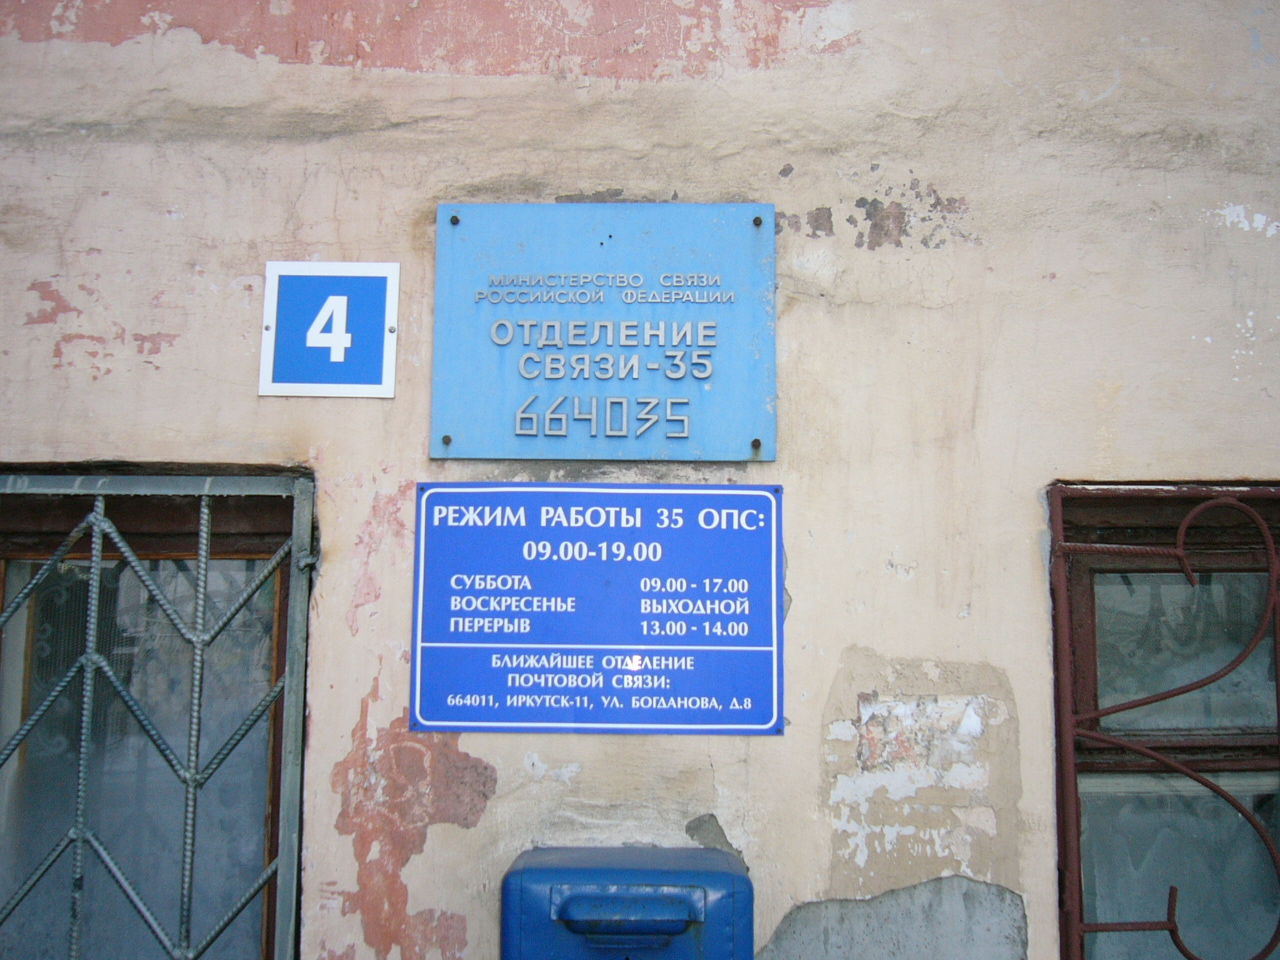 ВХОД, отделение почтовой связи 664035, Иркутская обл., Иркутск